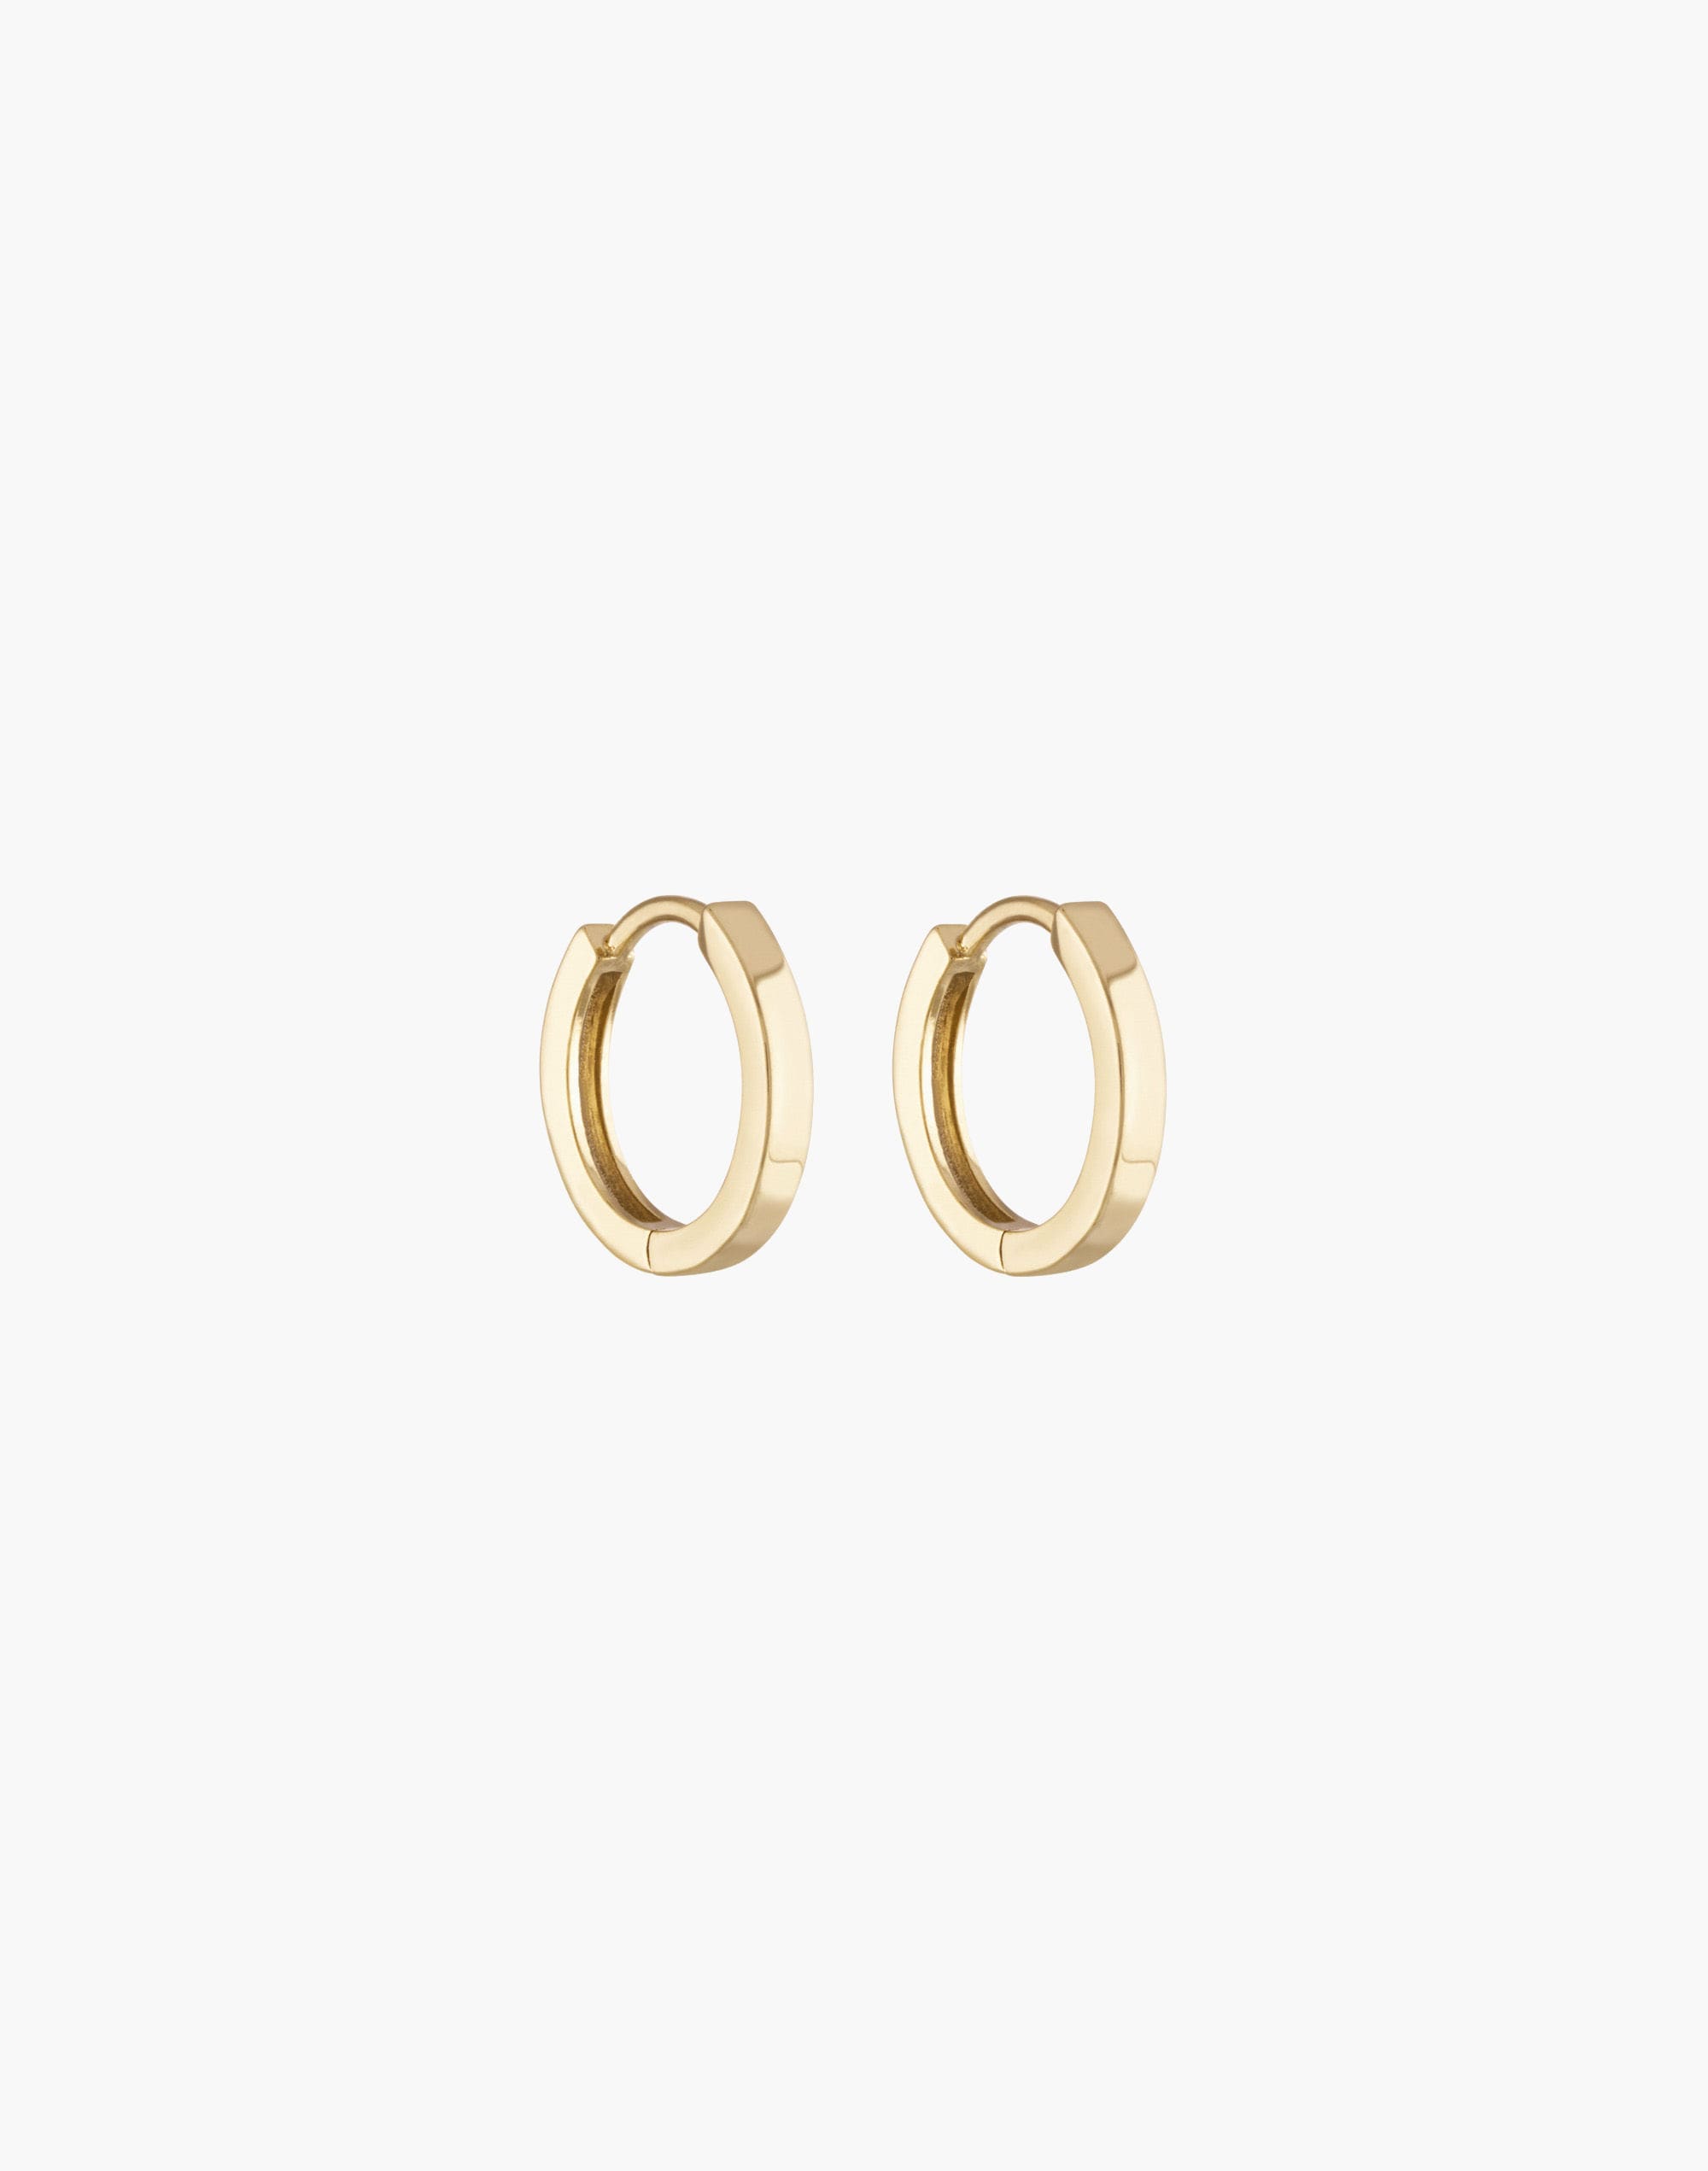 Mw Alexa Leigh 14k Gold-filled Huggie Hoop Earrings